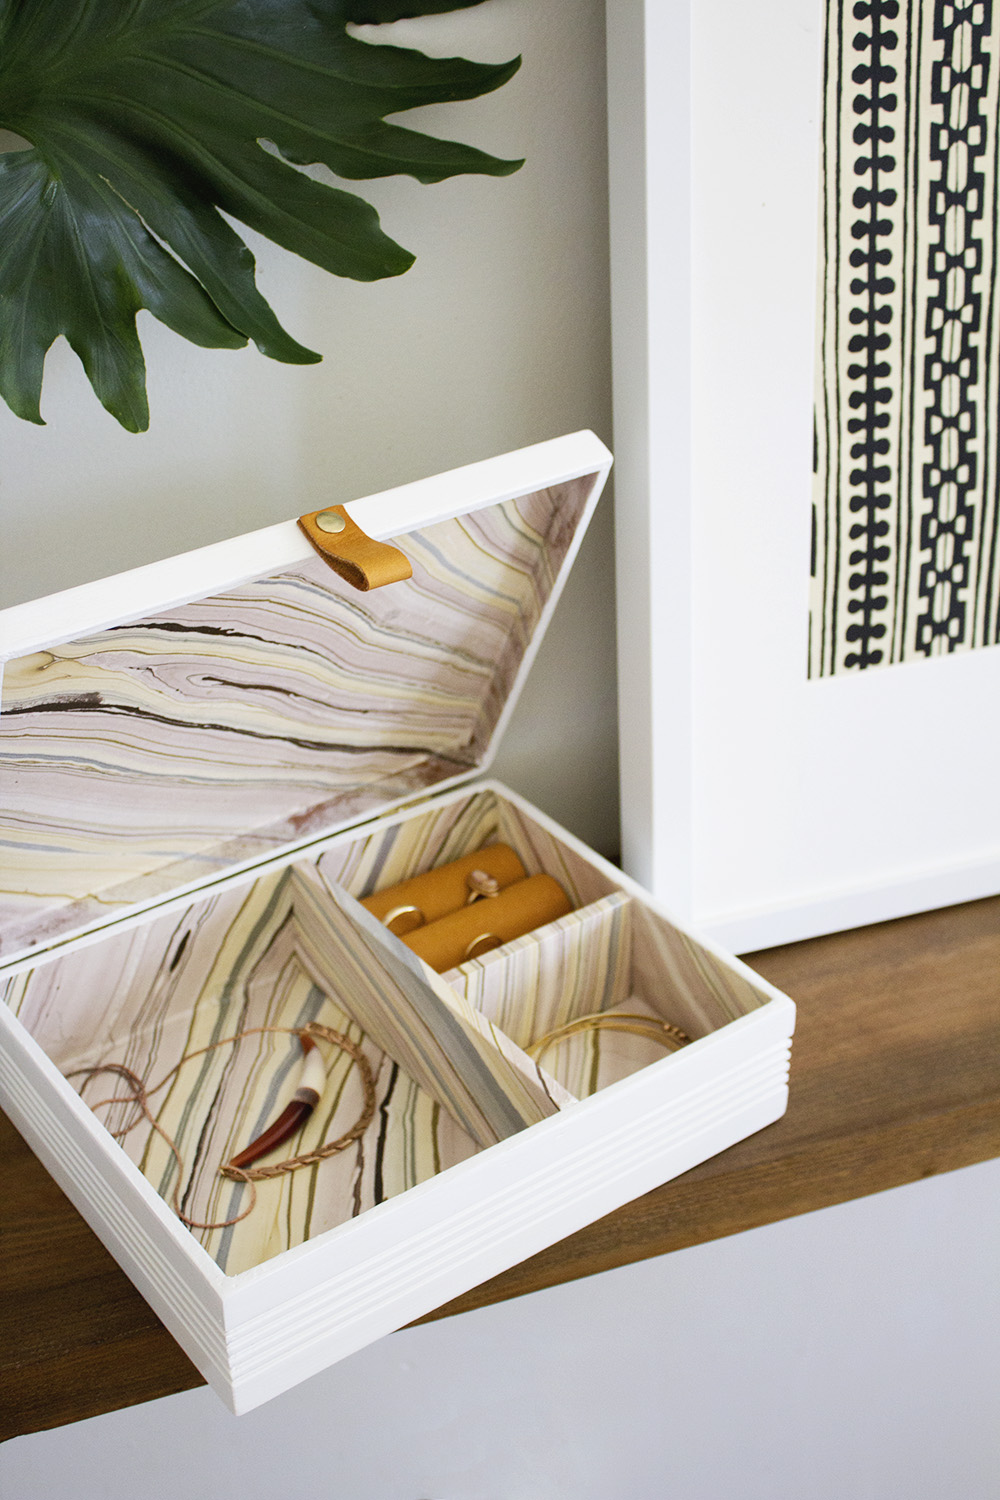 Details about   Perdomo 10th Anniv Handmade Wood Cigar Box Stash-Storage-Trinket-Jewelry-Crafts 